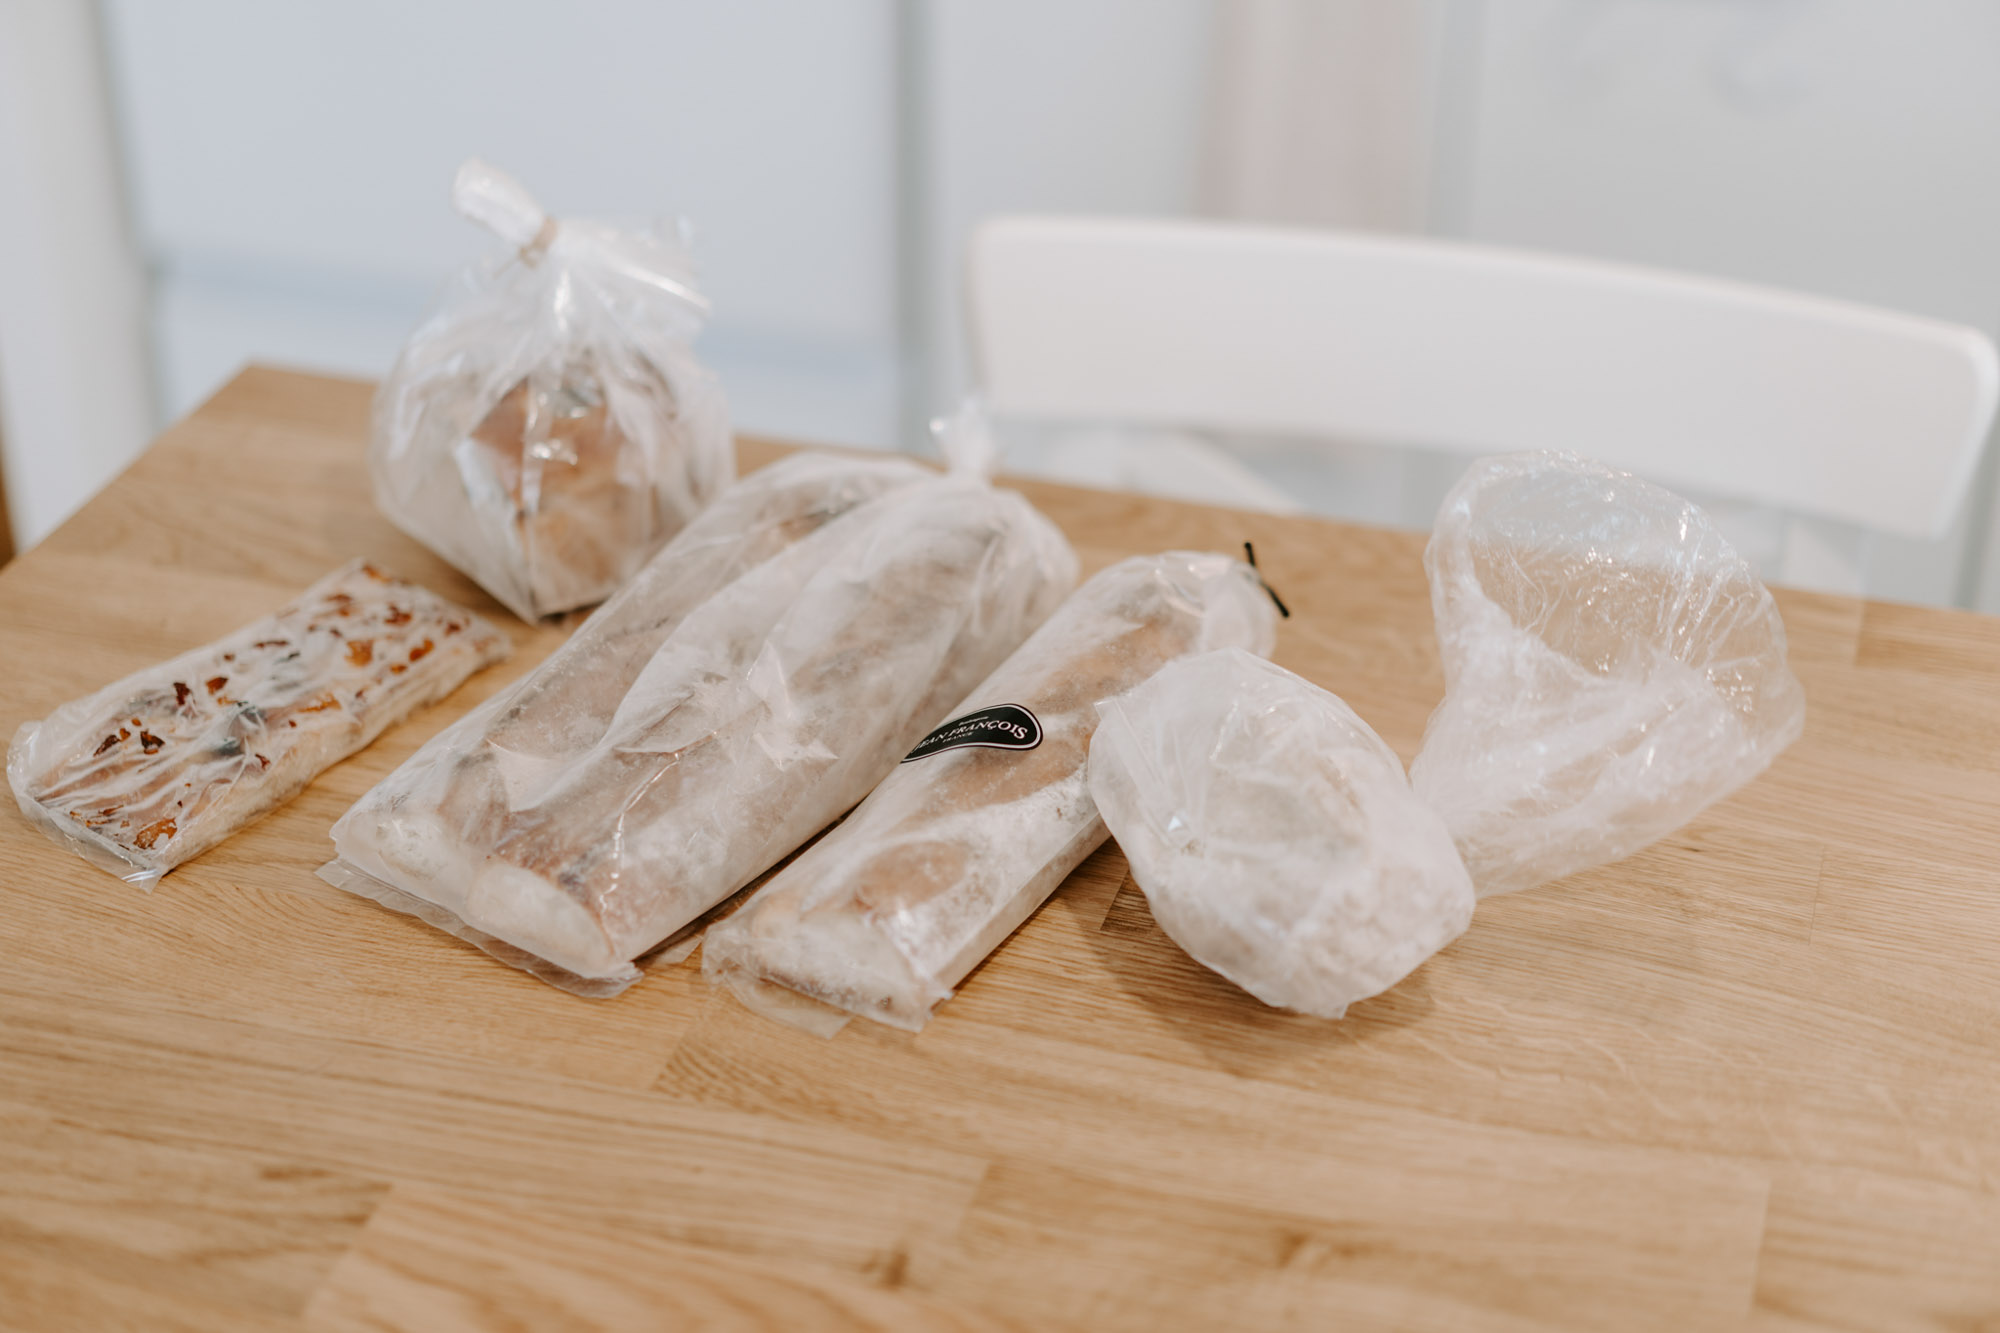 パンのお取り寄せができる「rebake」サービスも利用して、たくさん冷凍されているとのこと。おうち時間を楽しむ工夫をされていますね。